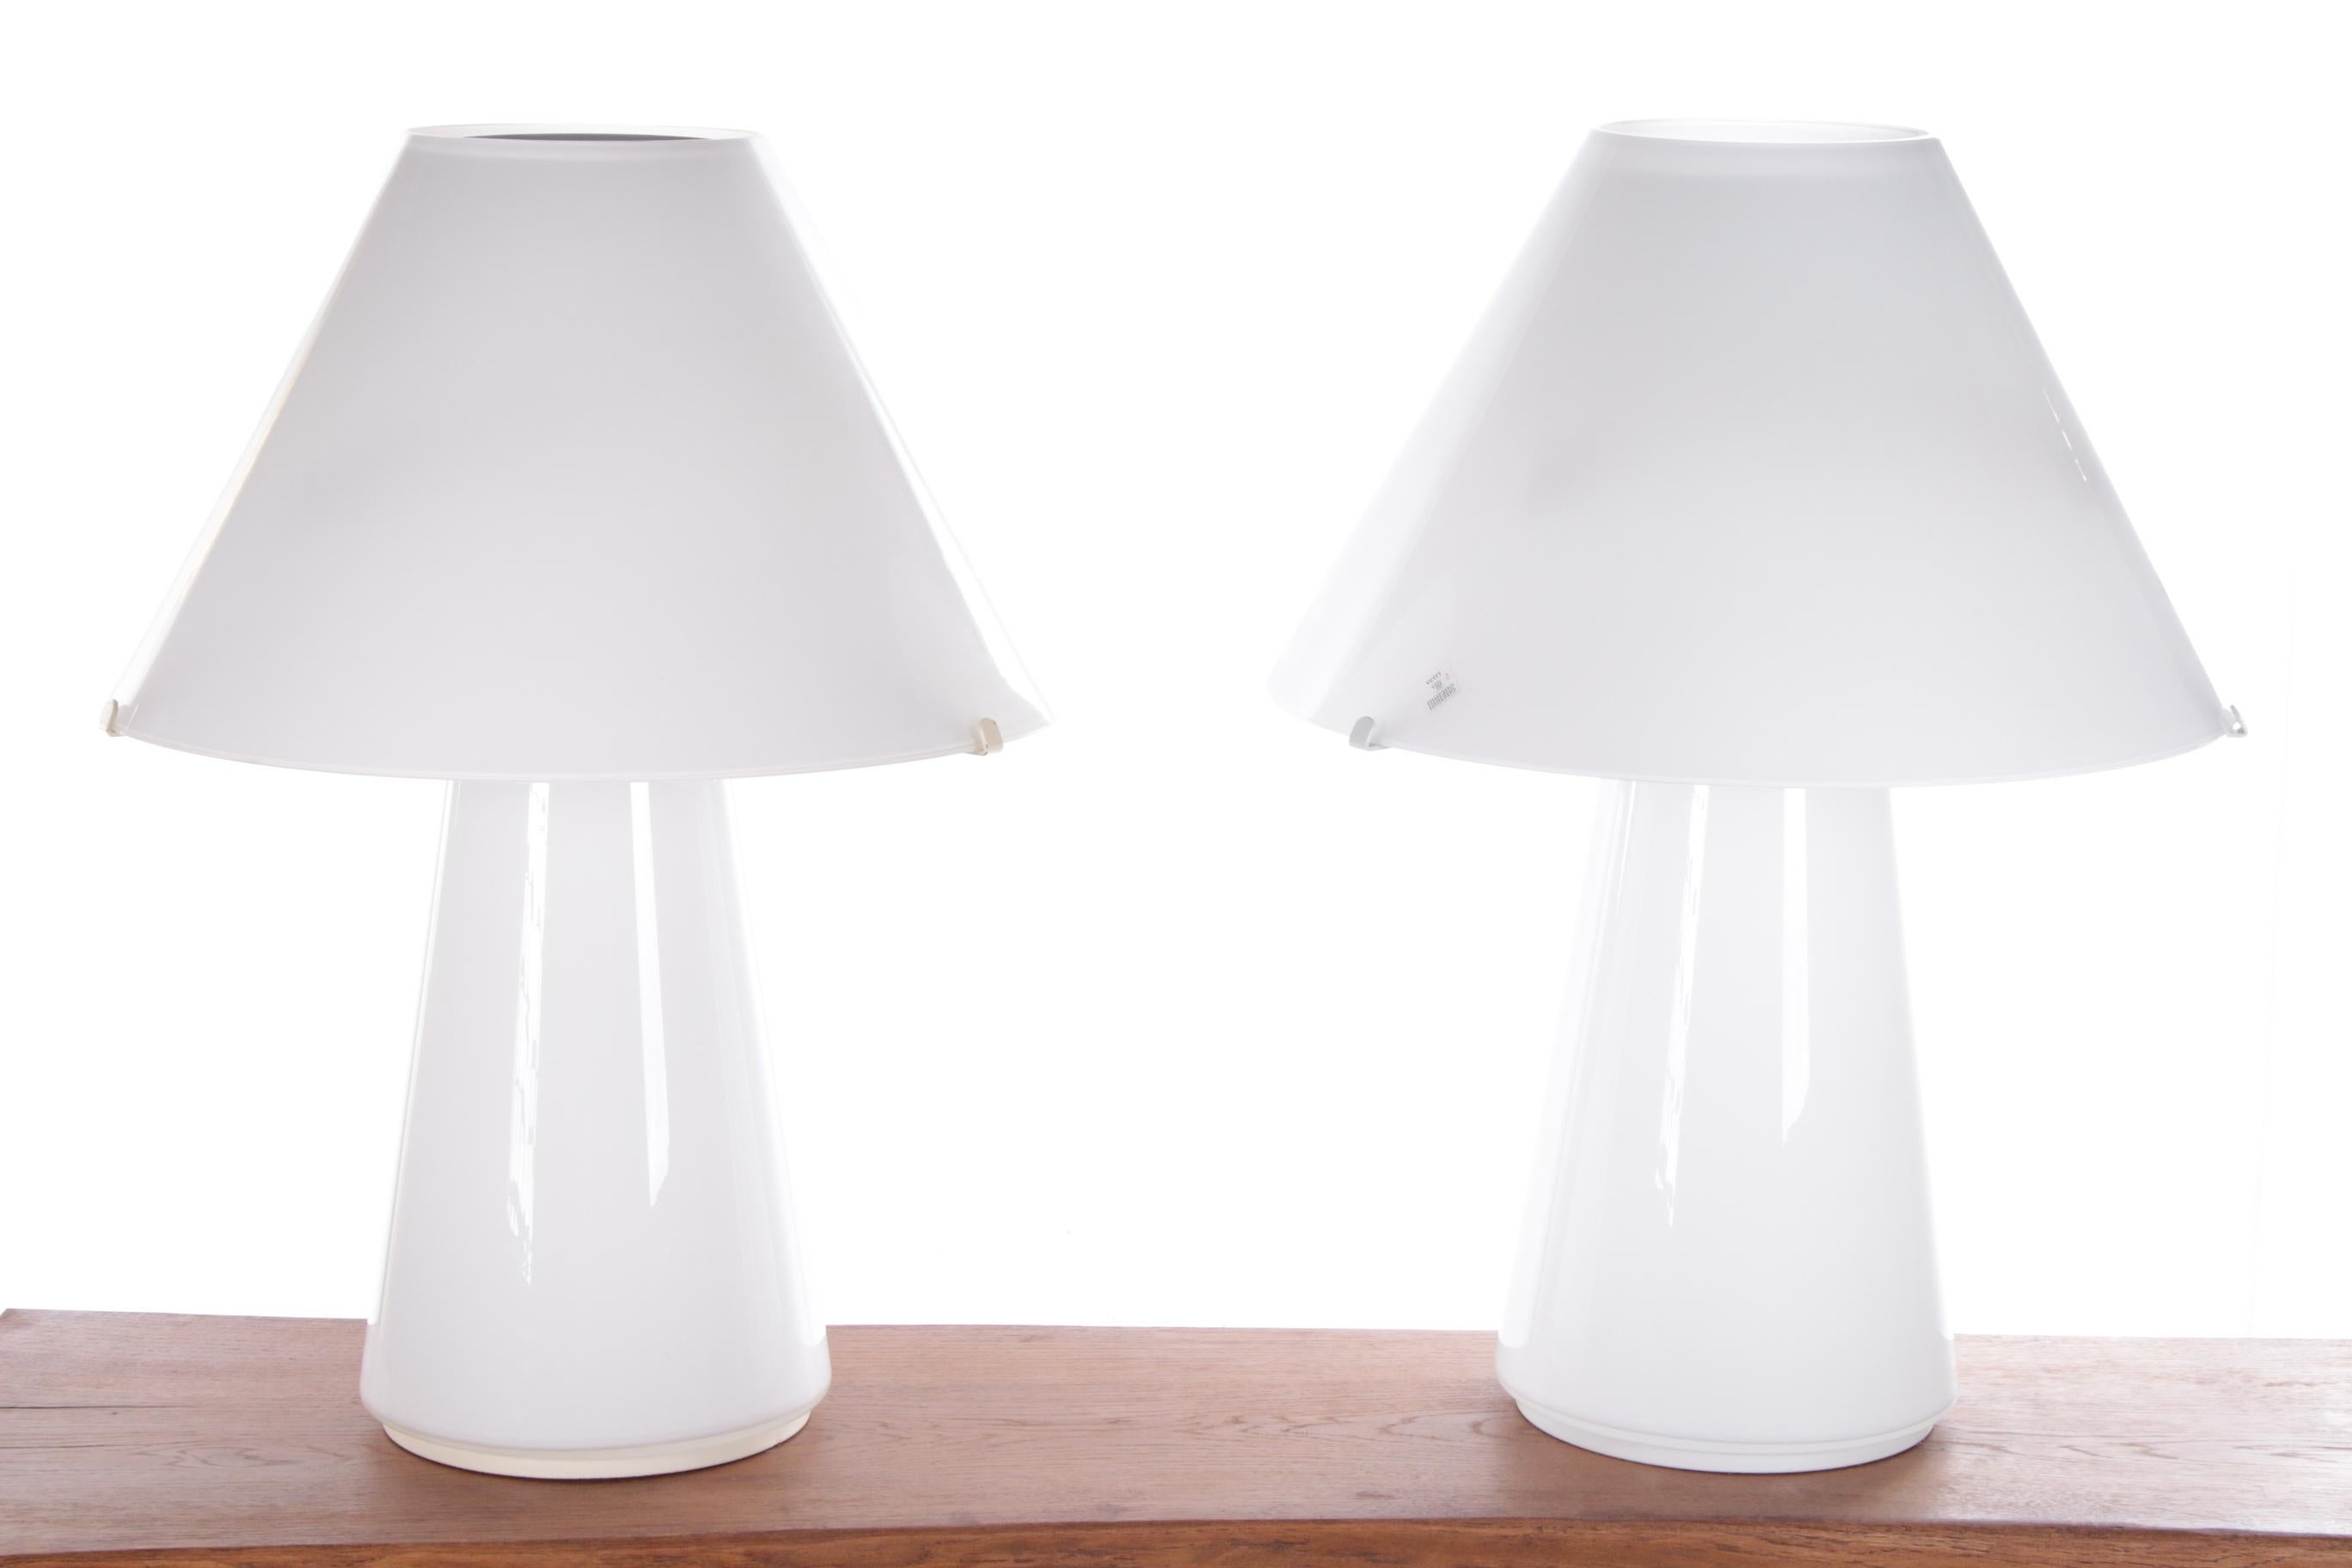 Dieses schöne Set von Murano-Pilz-Lampen ist original, entworfen und hergestellt von Gianni Seguso im Jahr 1970.

Dieses elegante Lampenset ist ein Blickfang im Raum. Schön auf einer Anrichte im Wohnzimmer.

Die Designerlampen sind in perfektem